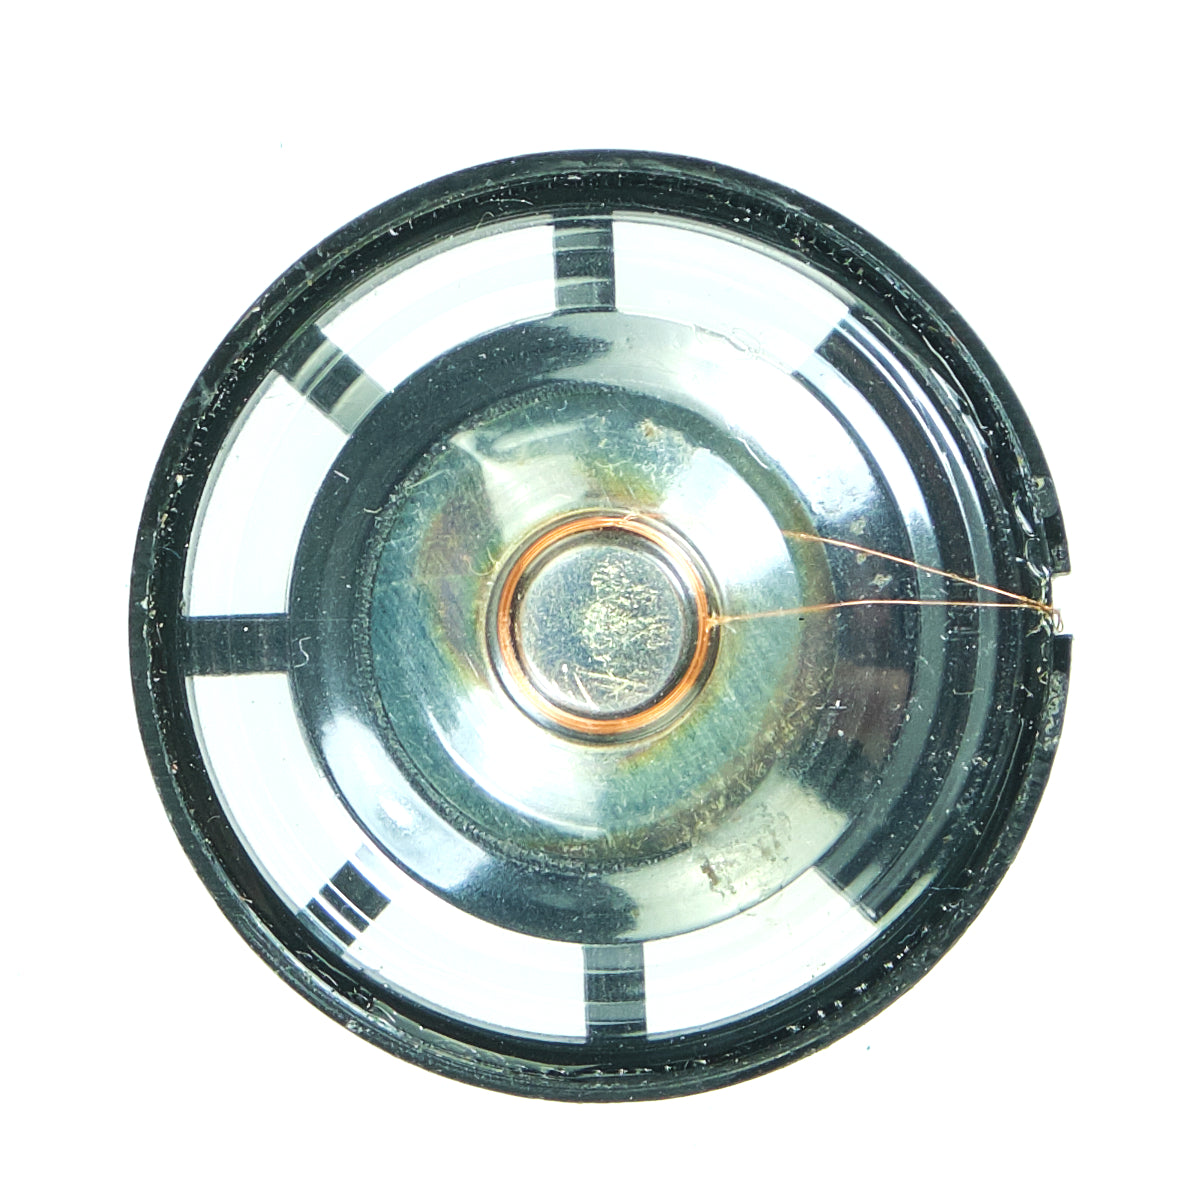 0.25W 8Ω Speaker, 29mm diameter